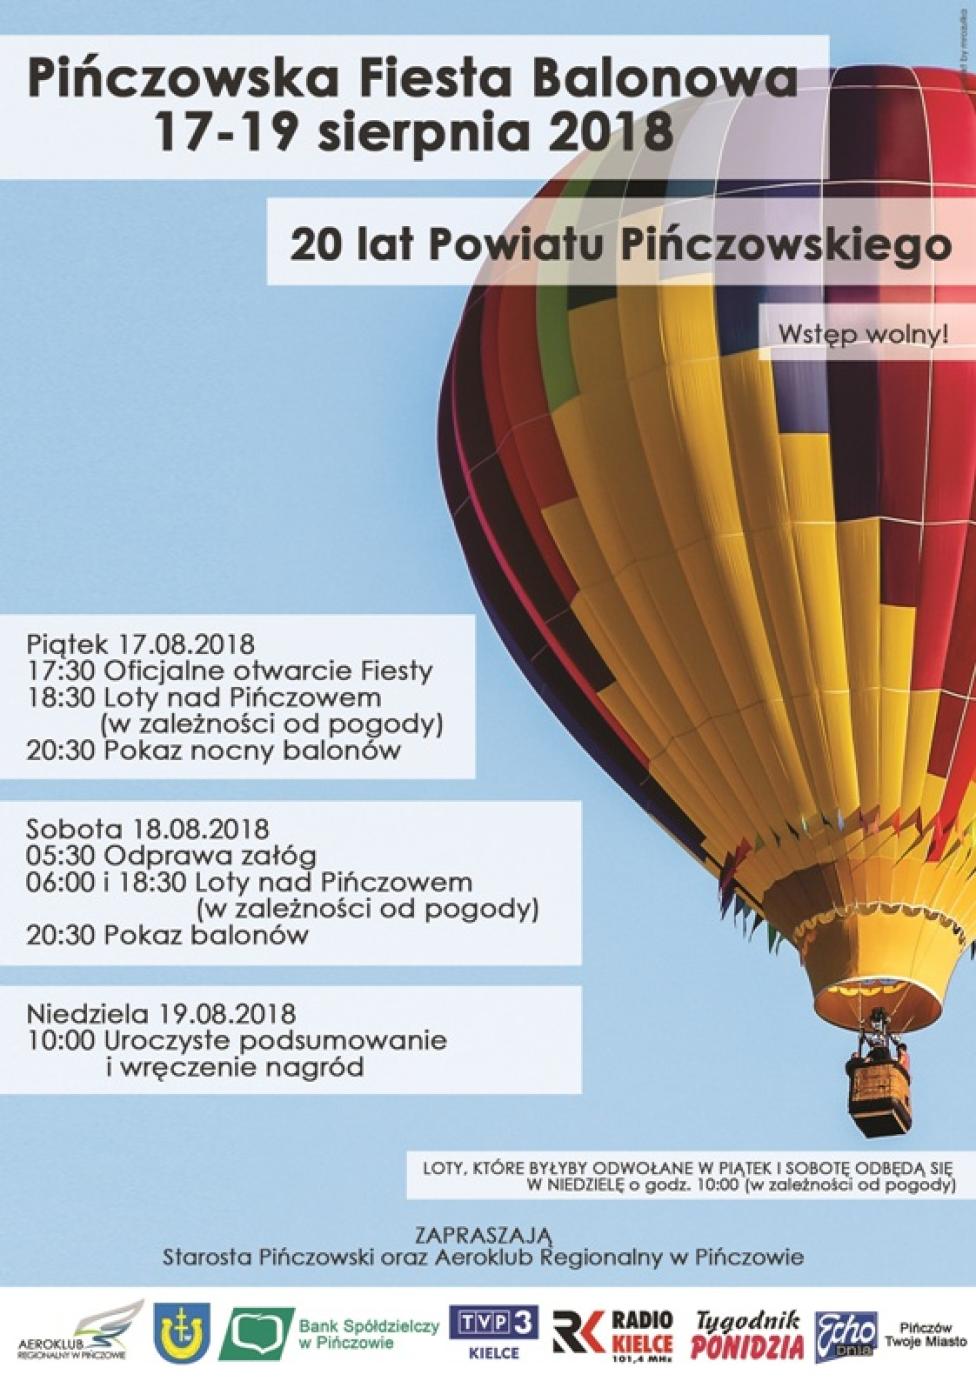 Pińczowska Fiesta Balonowa 2018 (fot. Aeroklub Regionalny w Pińczowie)